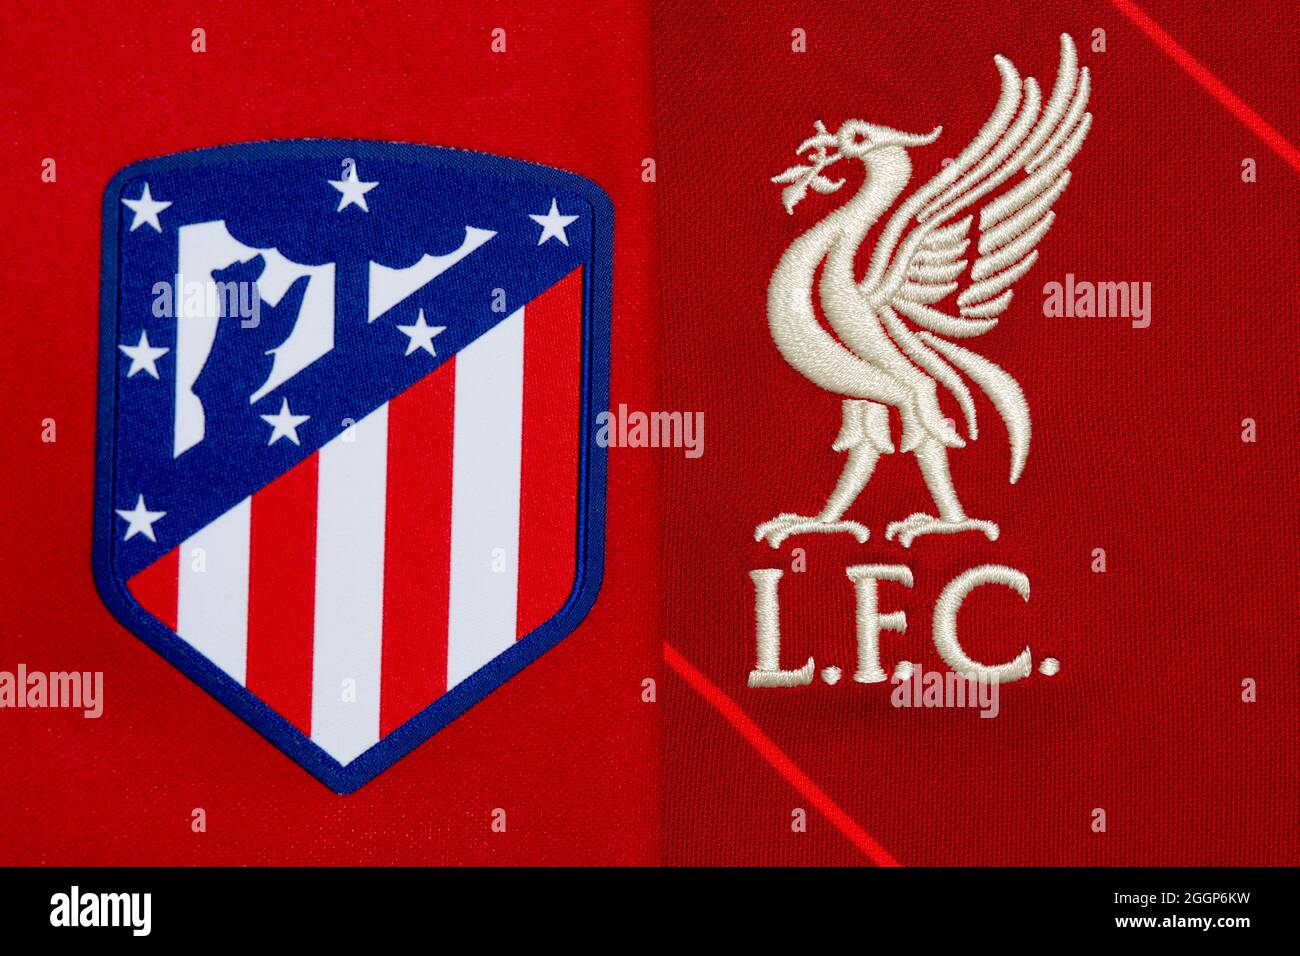 Gros plan de l'écusson du club Atletico Madrid et Liverpool FC. Banque D'Images